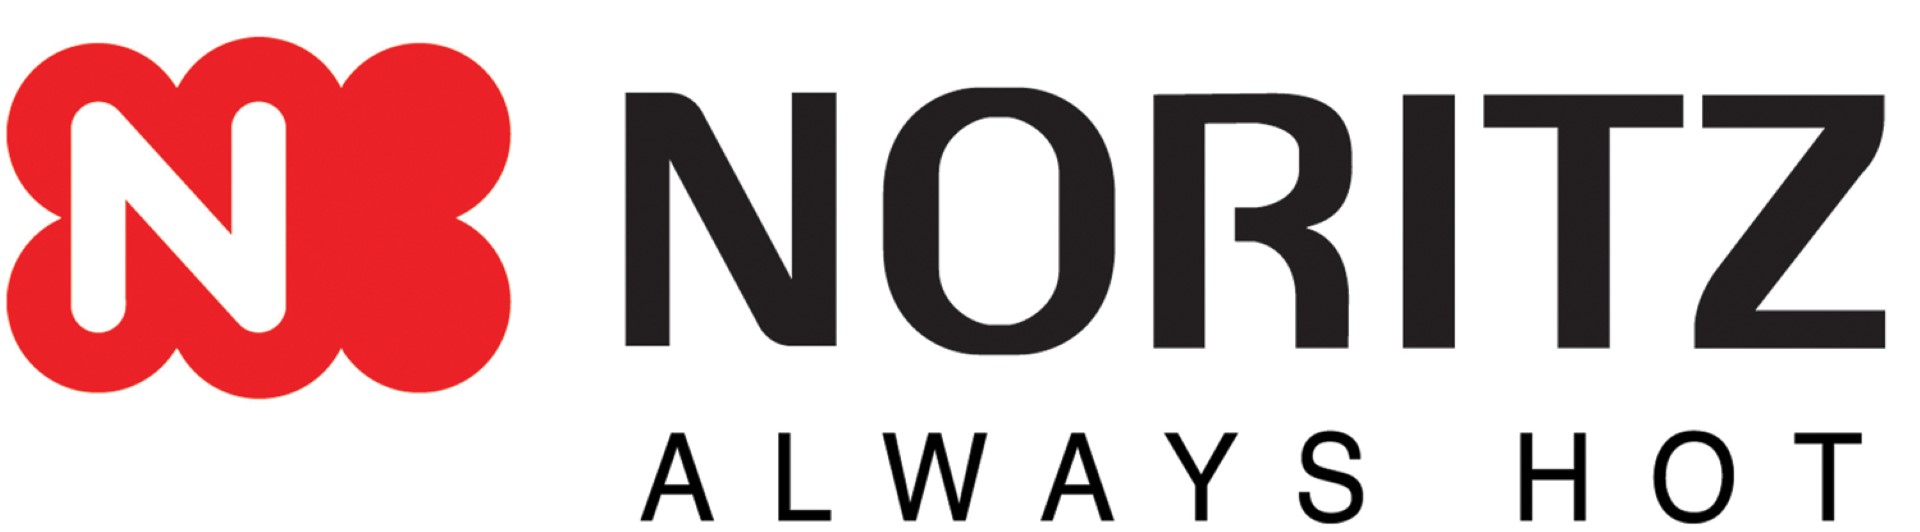 Noritz logo